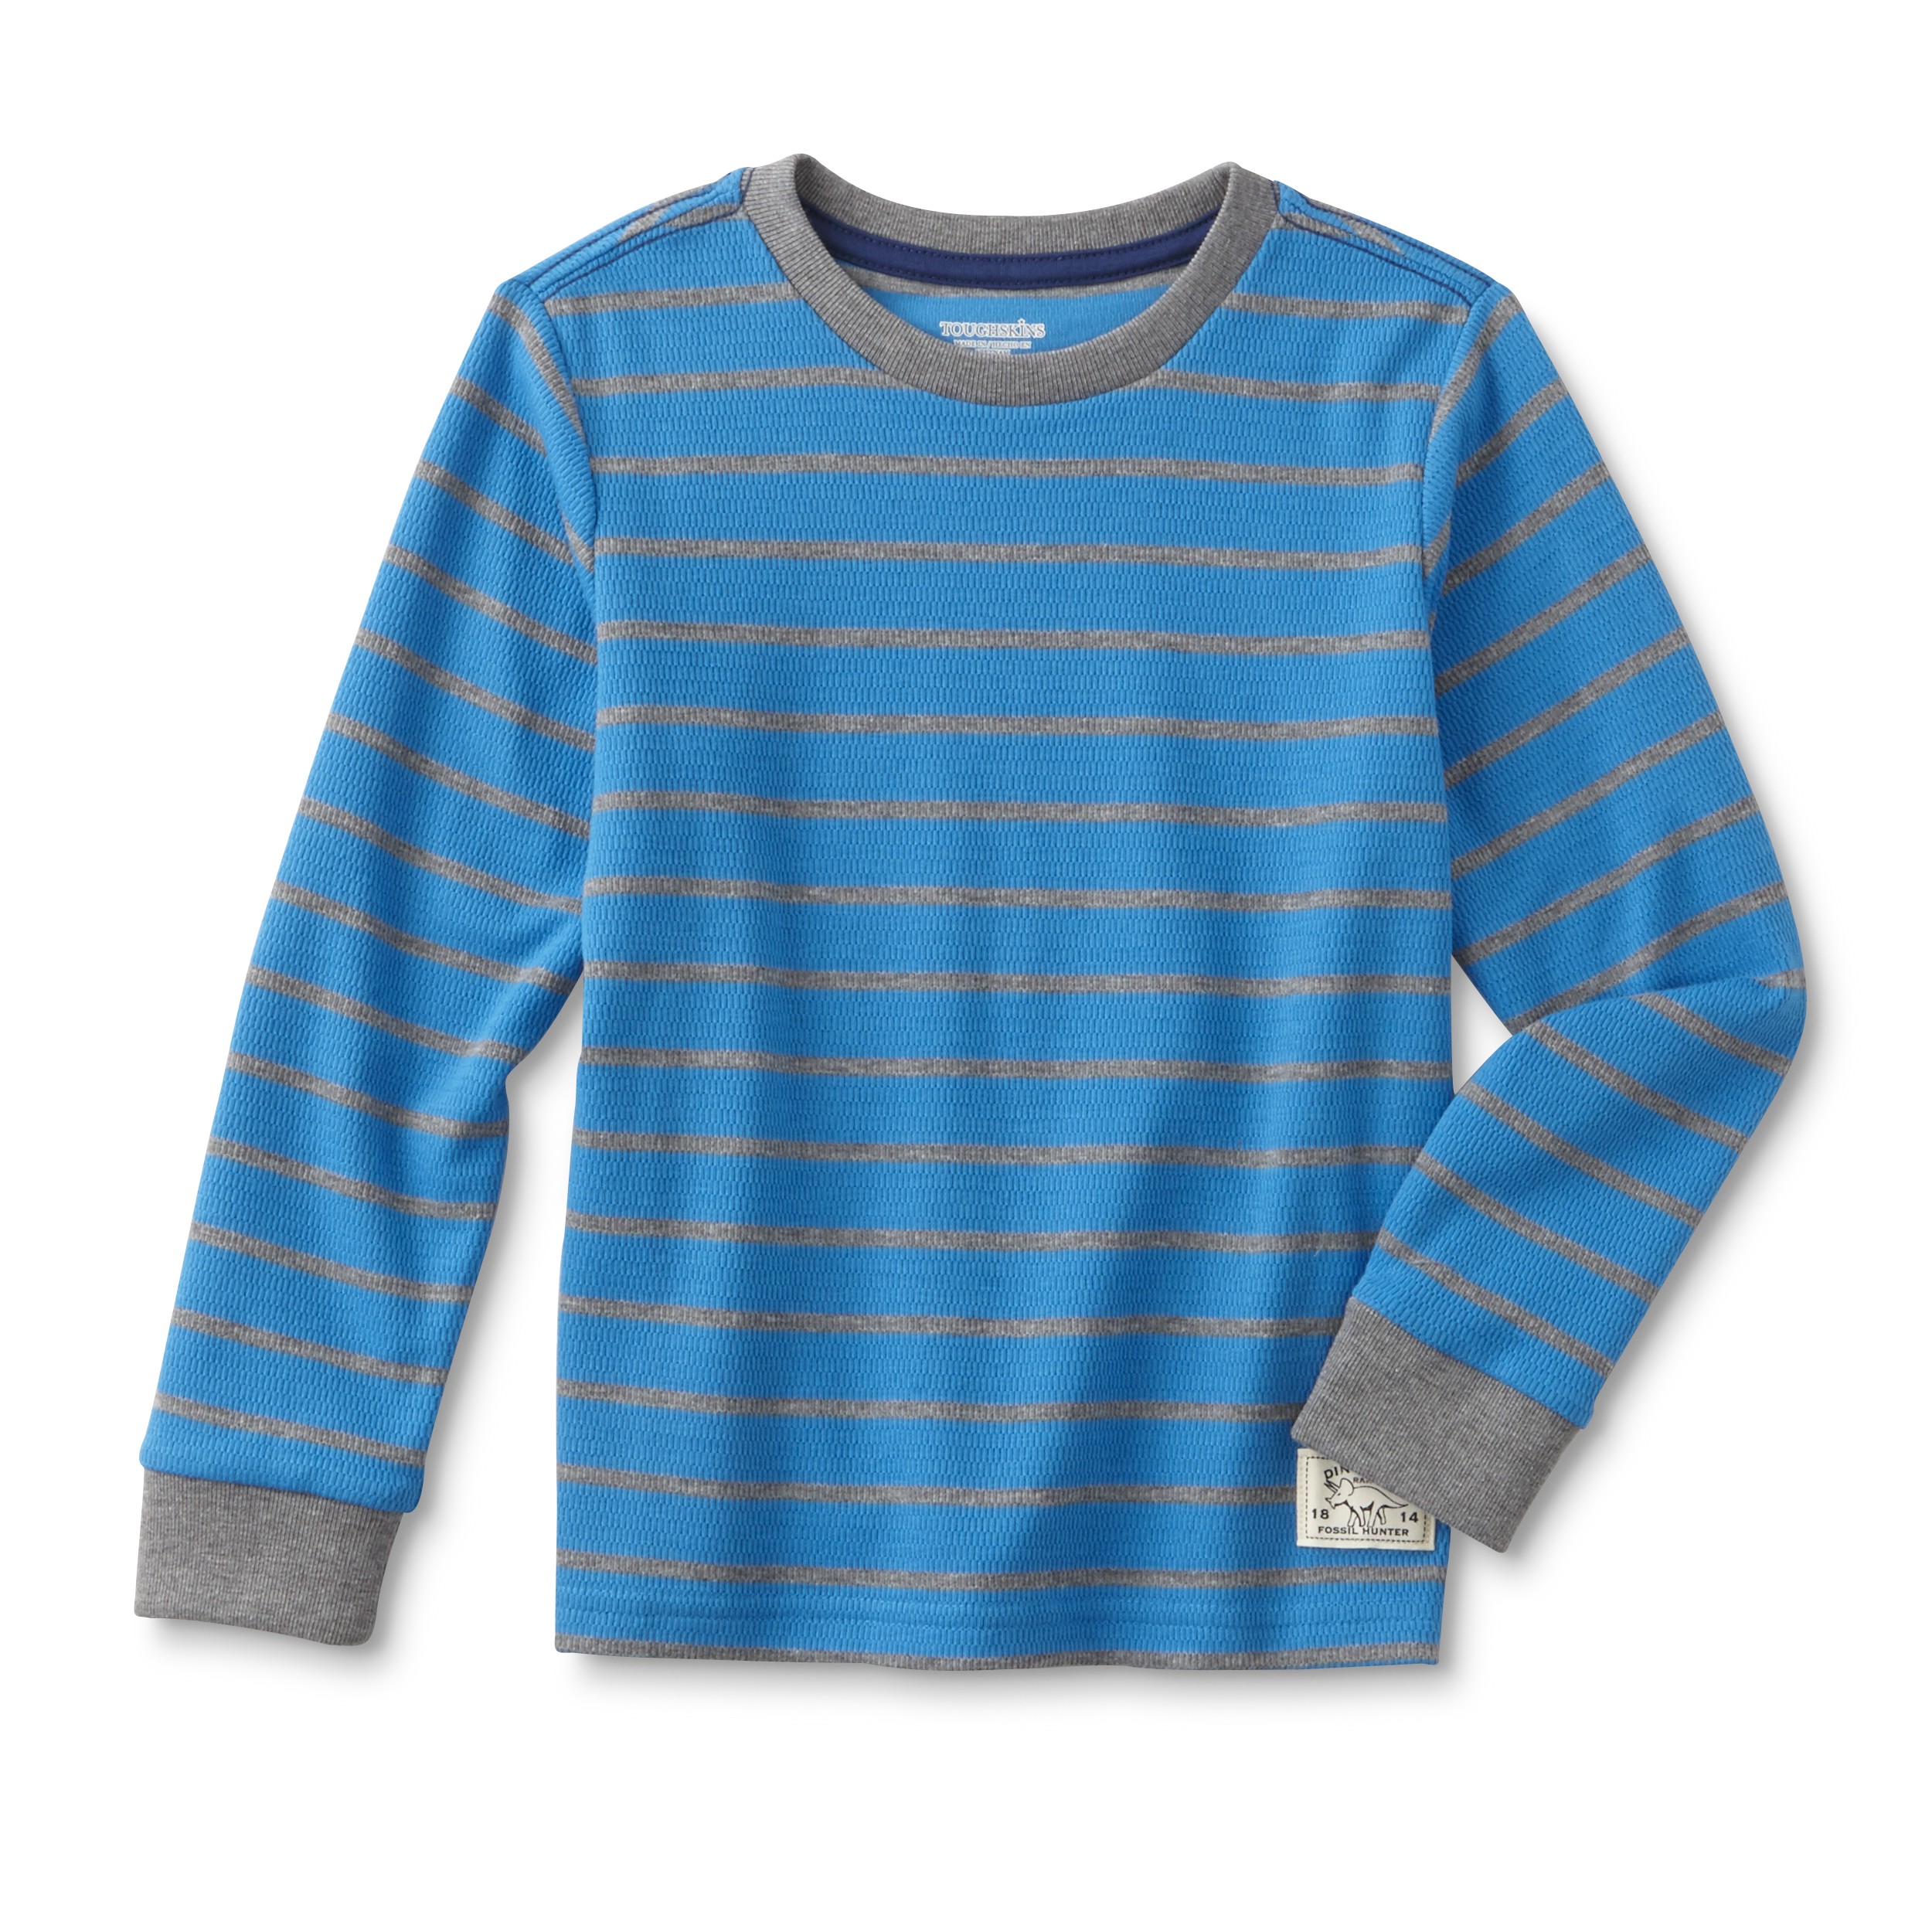 Toughskins Boy's Thermal Shirt - Striped